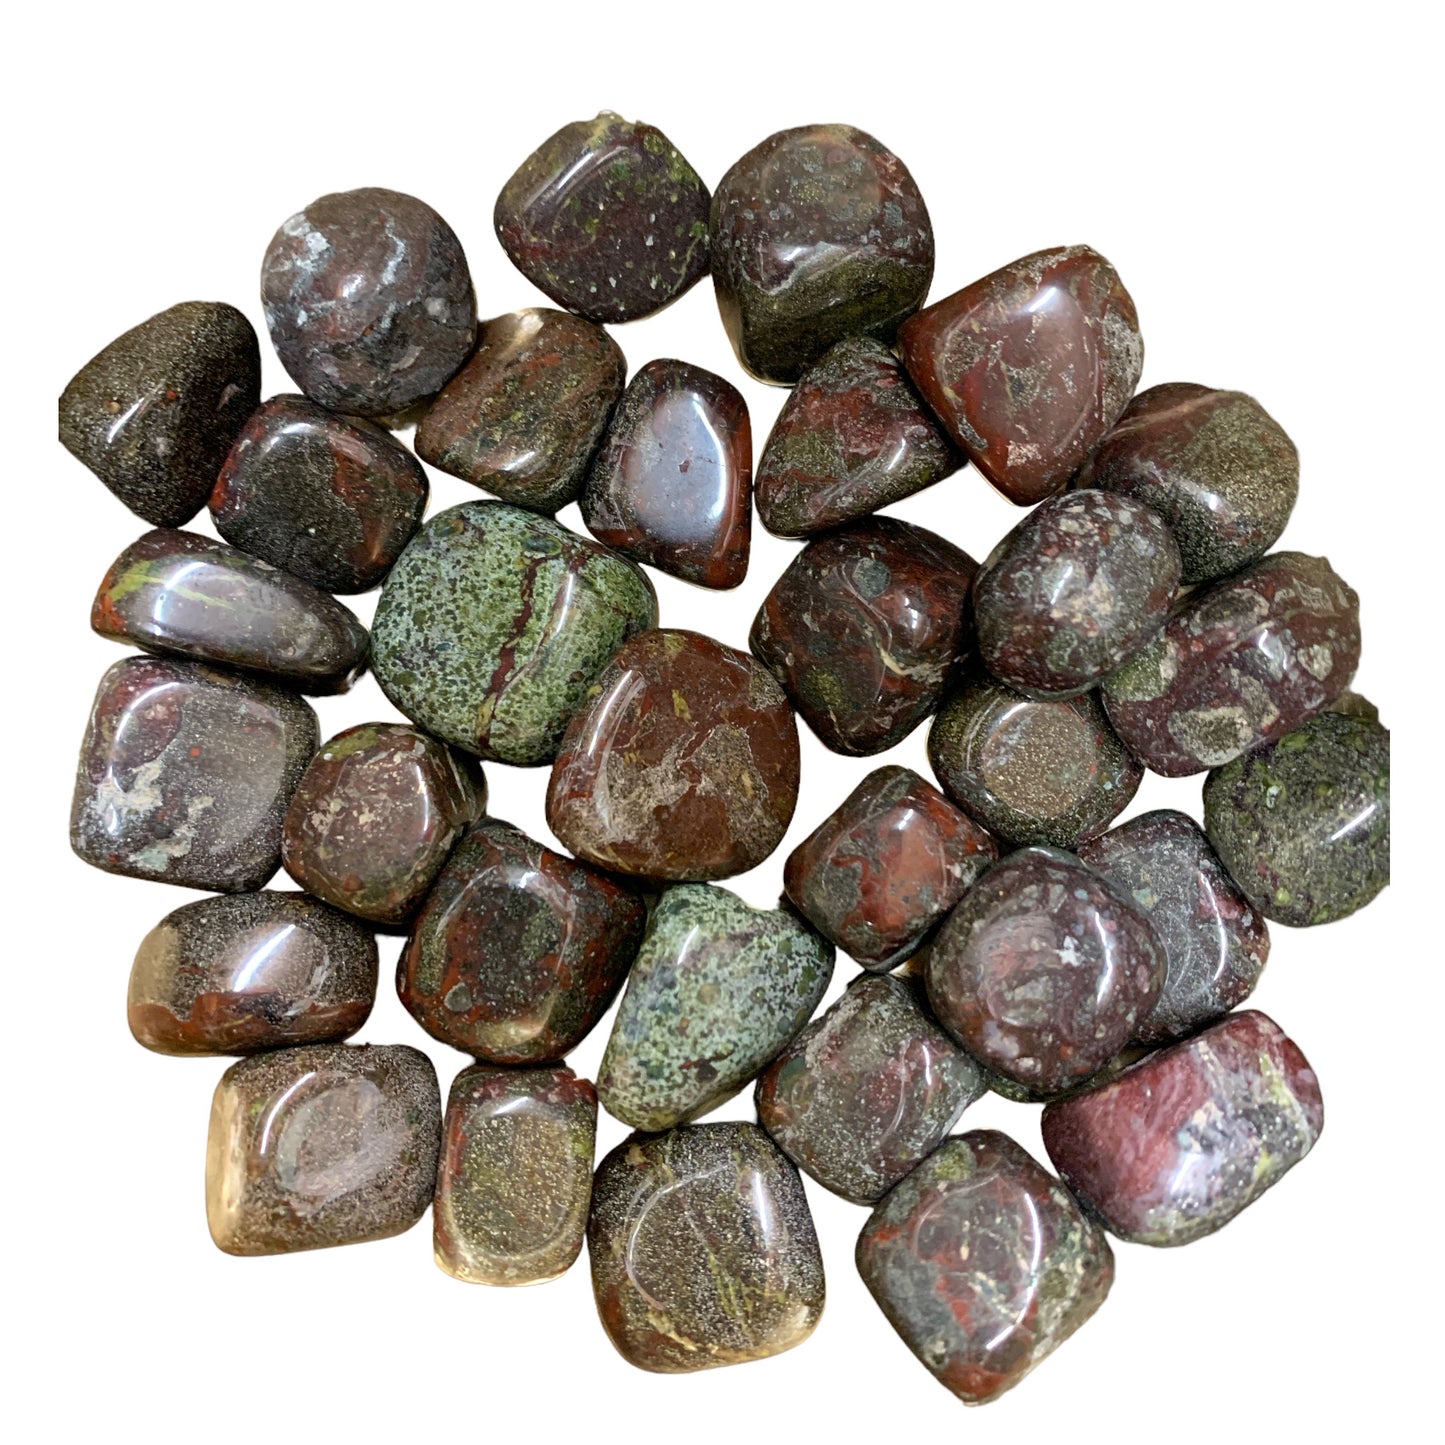 Bloodstone Tumbled Stones - Medium 25 - 35 mm - 500 grams - India - NEW1222